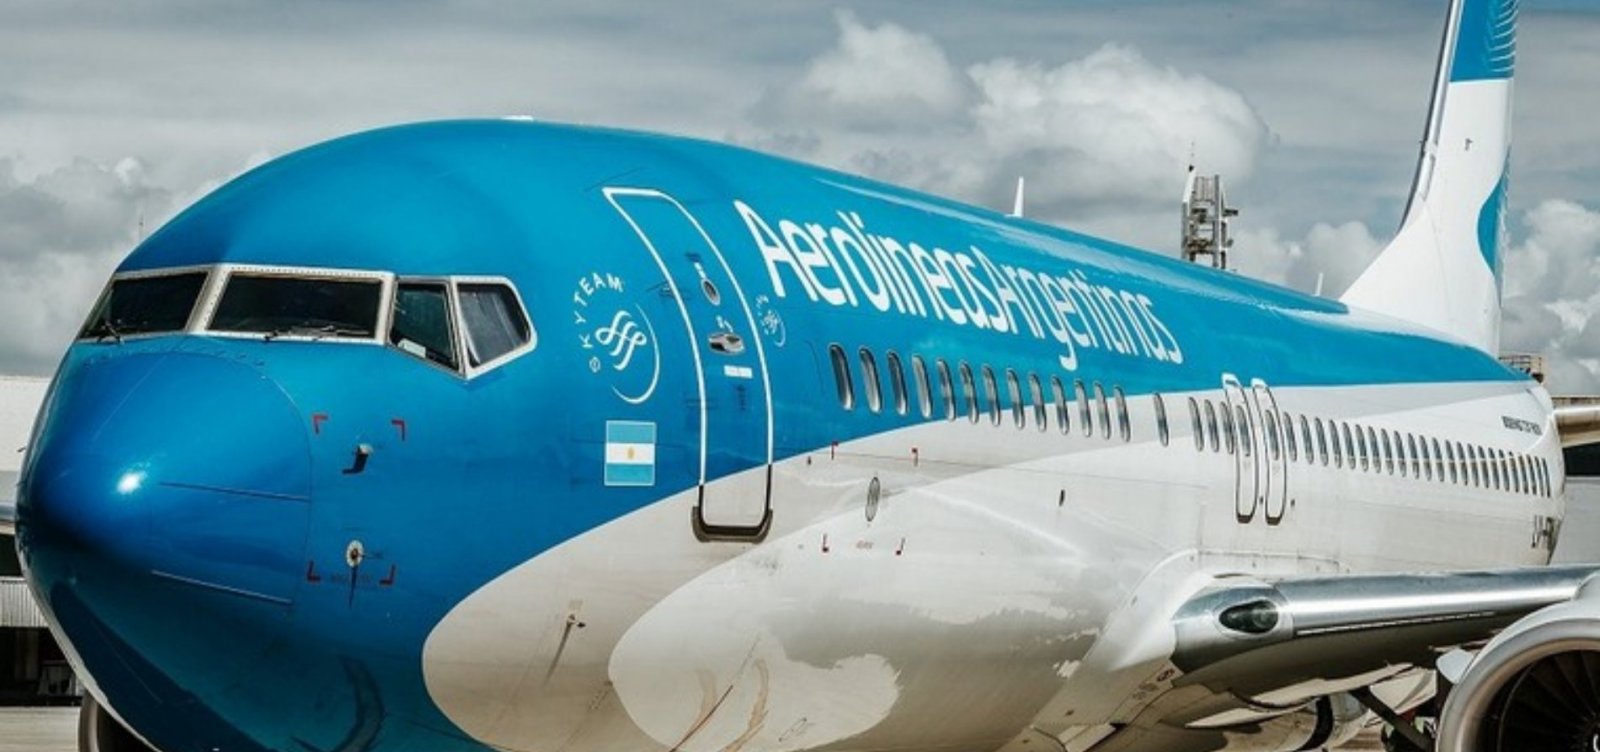 Companhia aérea passa a adotar Airbus A330 nos voos entre Buenos Aires e Salvador